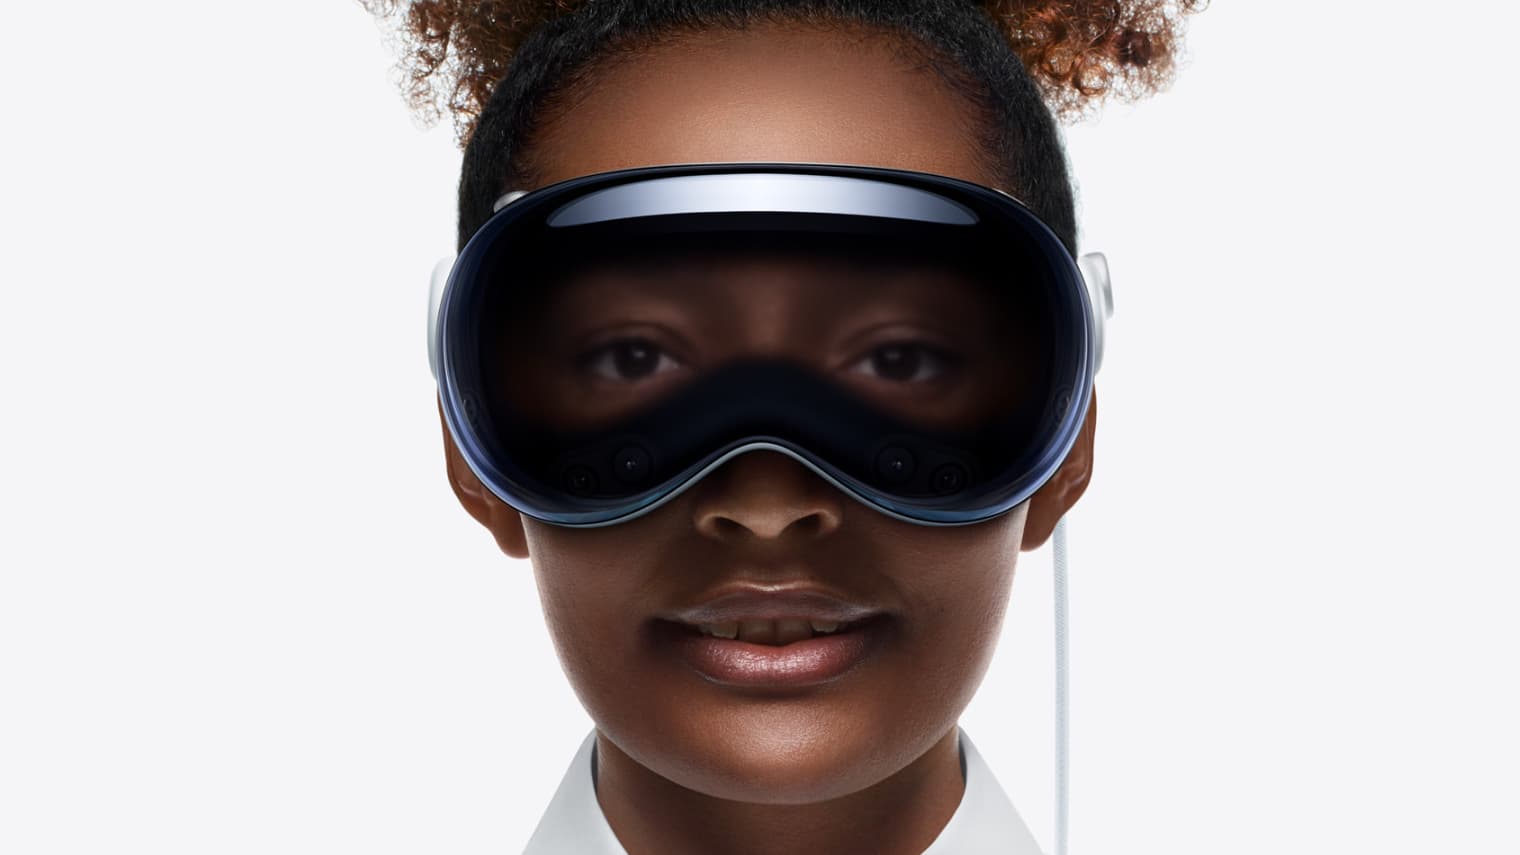 Le casque Vision Pro d'Apple, un bijou technologique au succès incertain